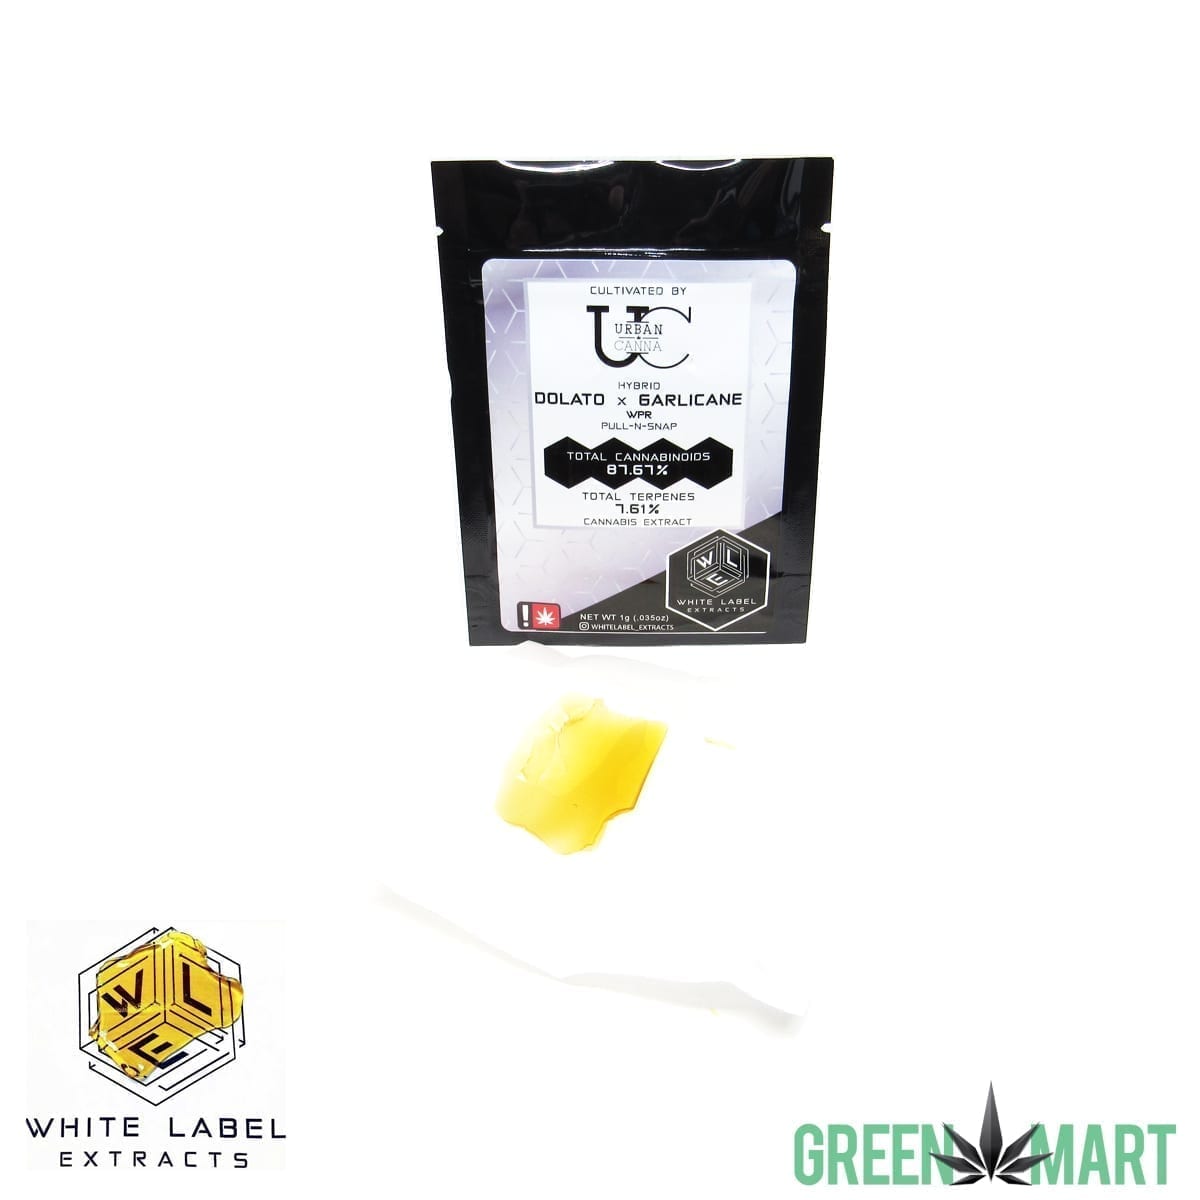 White Label Extracts - Dolato x Garlicane